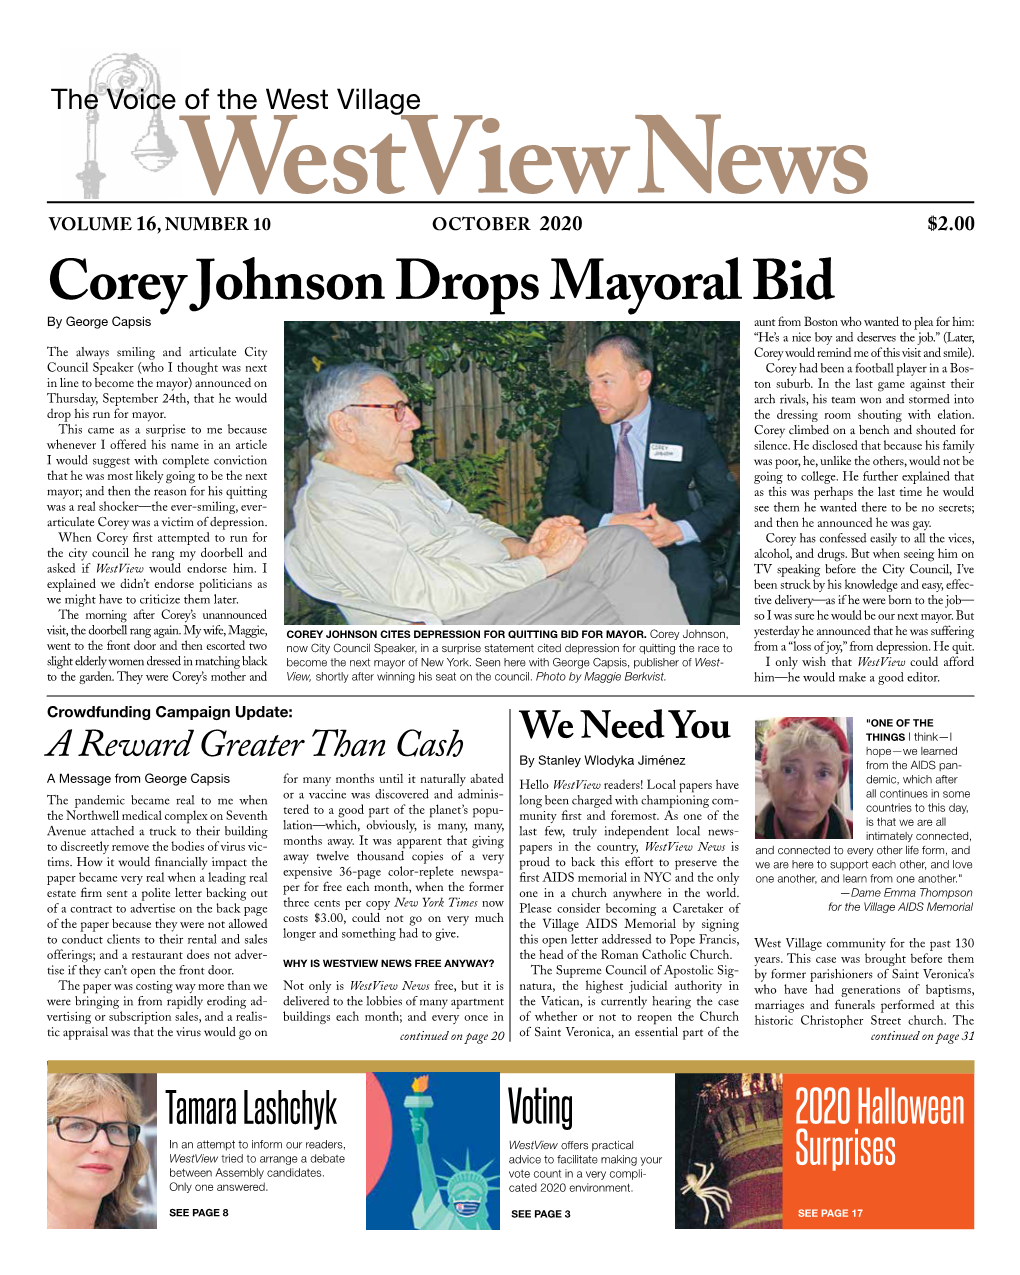 Corey Johnson Drops Mayoral